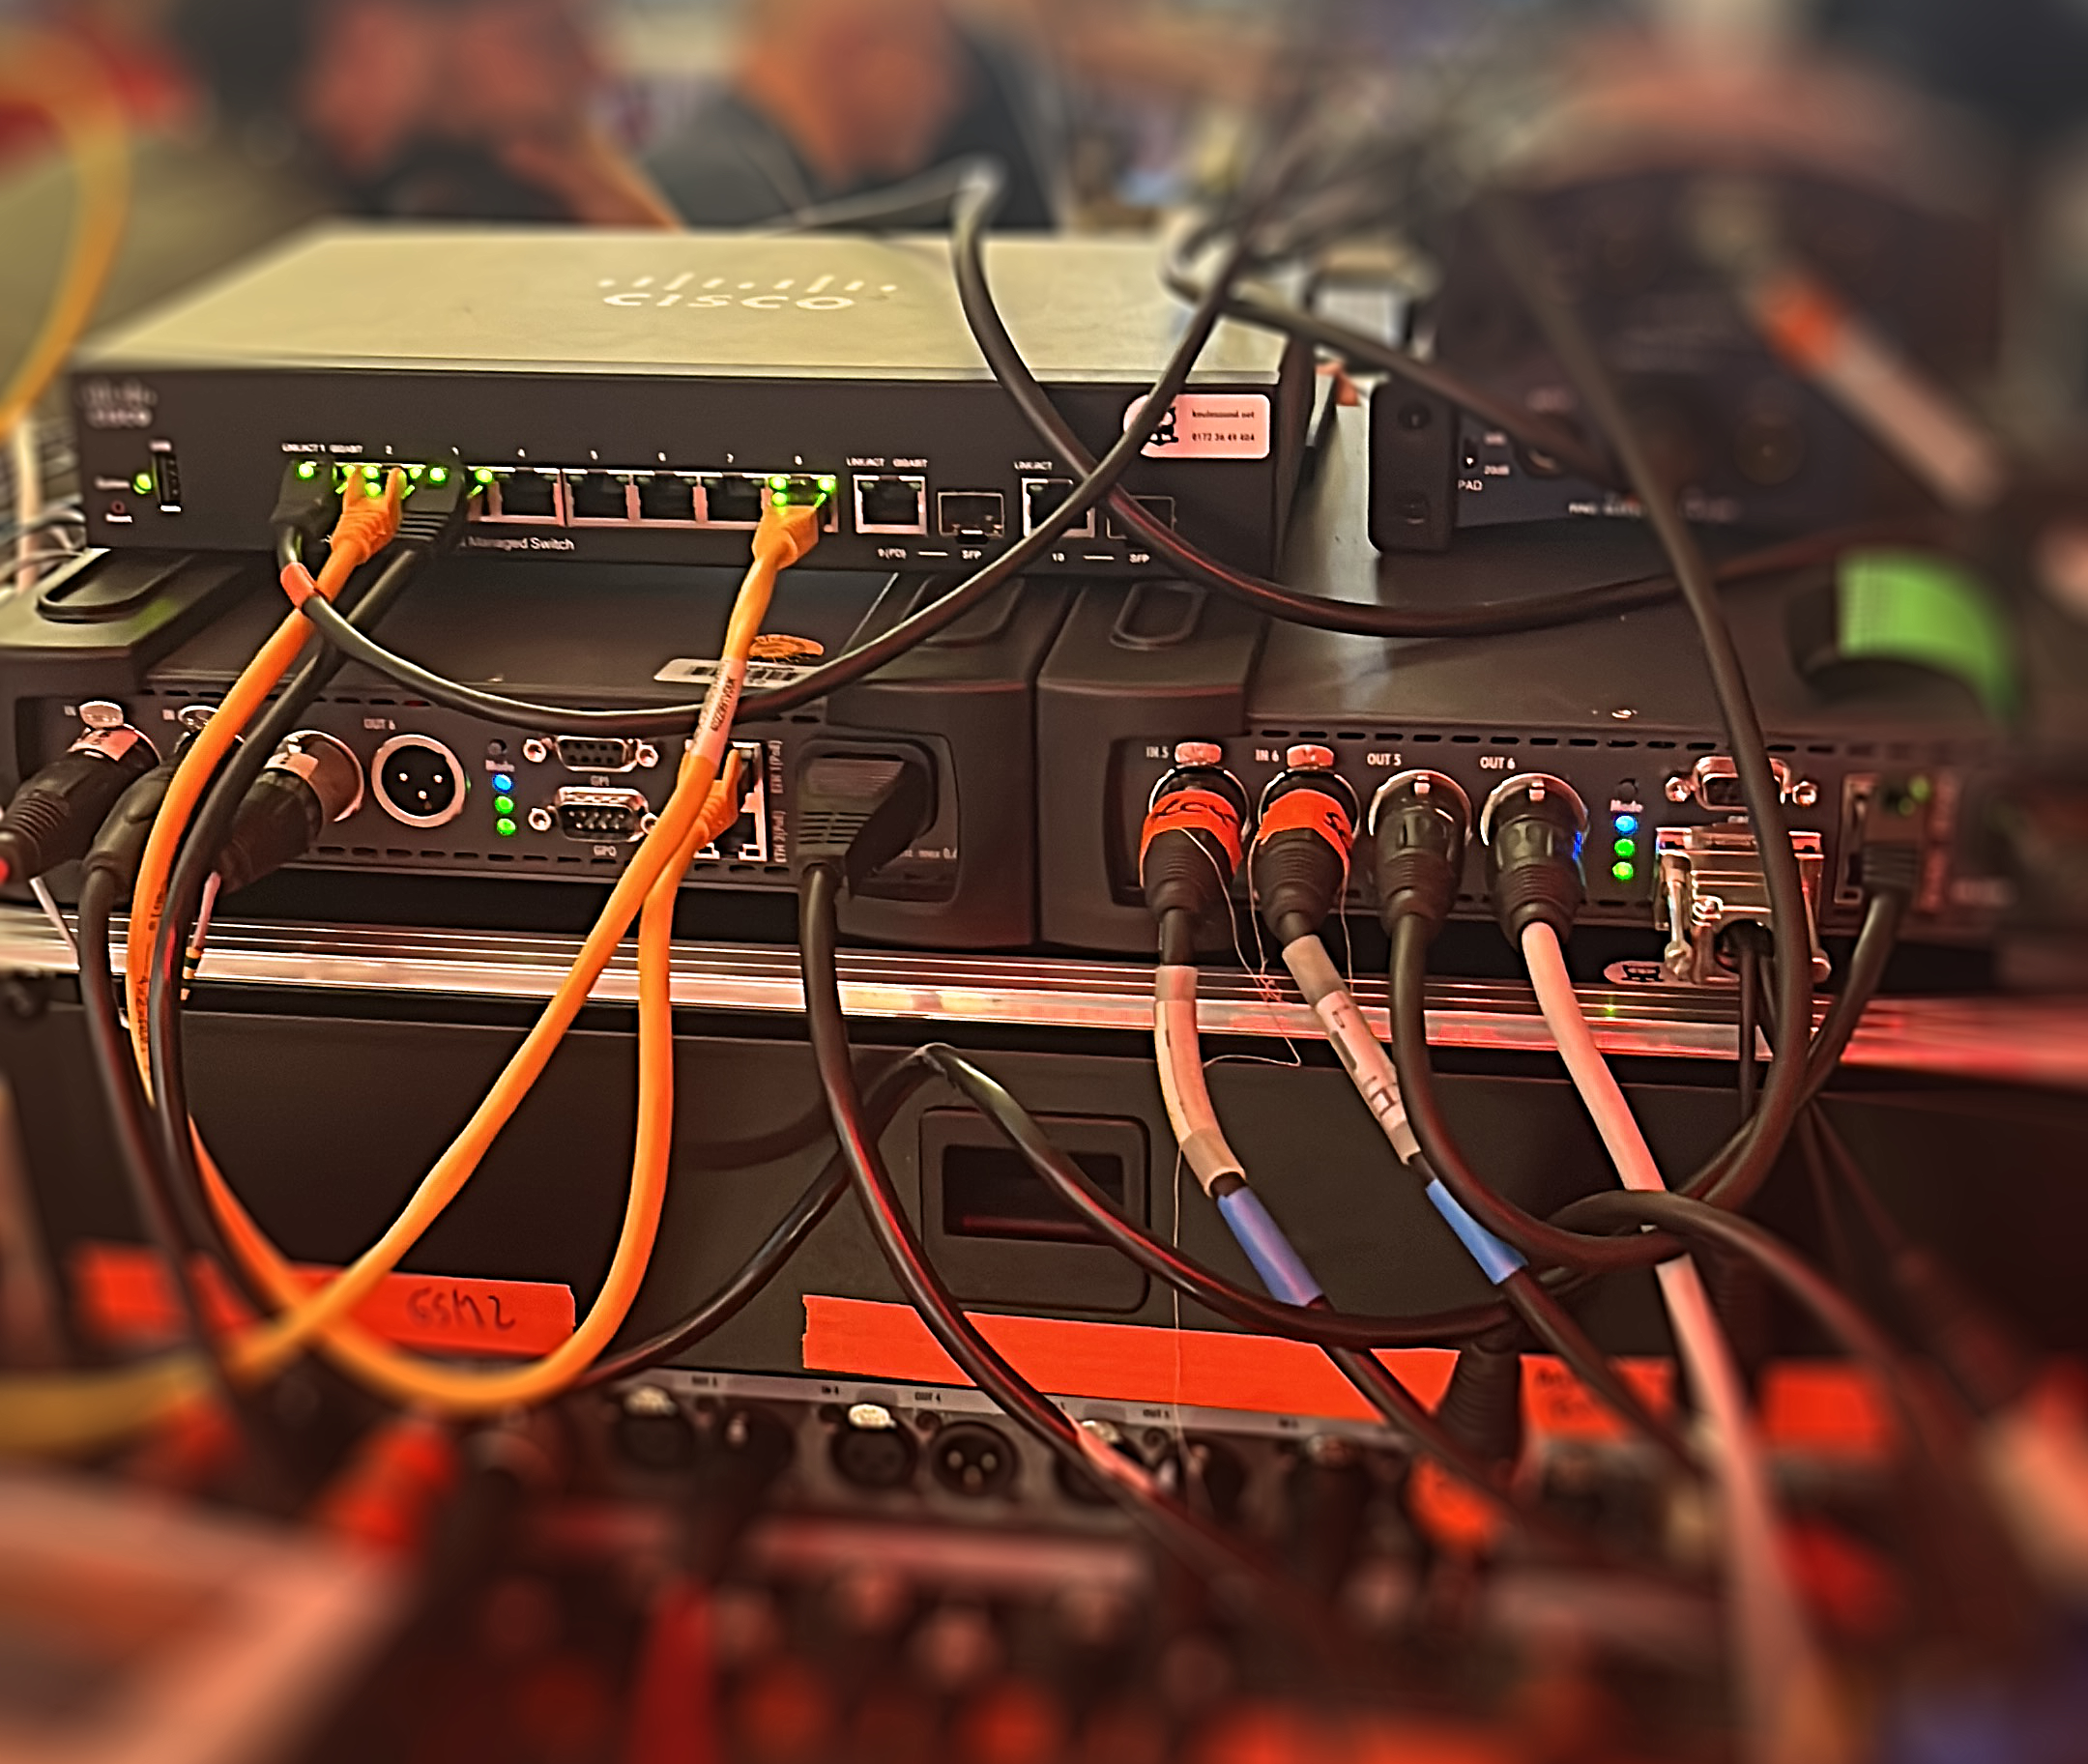 Studiogeräte, oben ein Switch für Netzwerk viele Kabel gehen zu unterschiedlichen Geräten, Unter dem Switch zwei Geräte die mit Audiokabel angeschlossen sind. Riedel Bolero und Riedel Artist